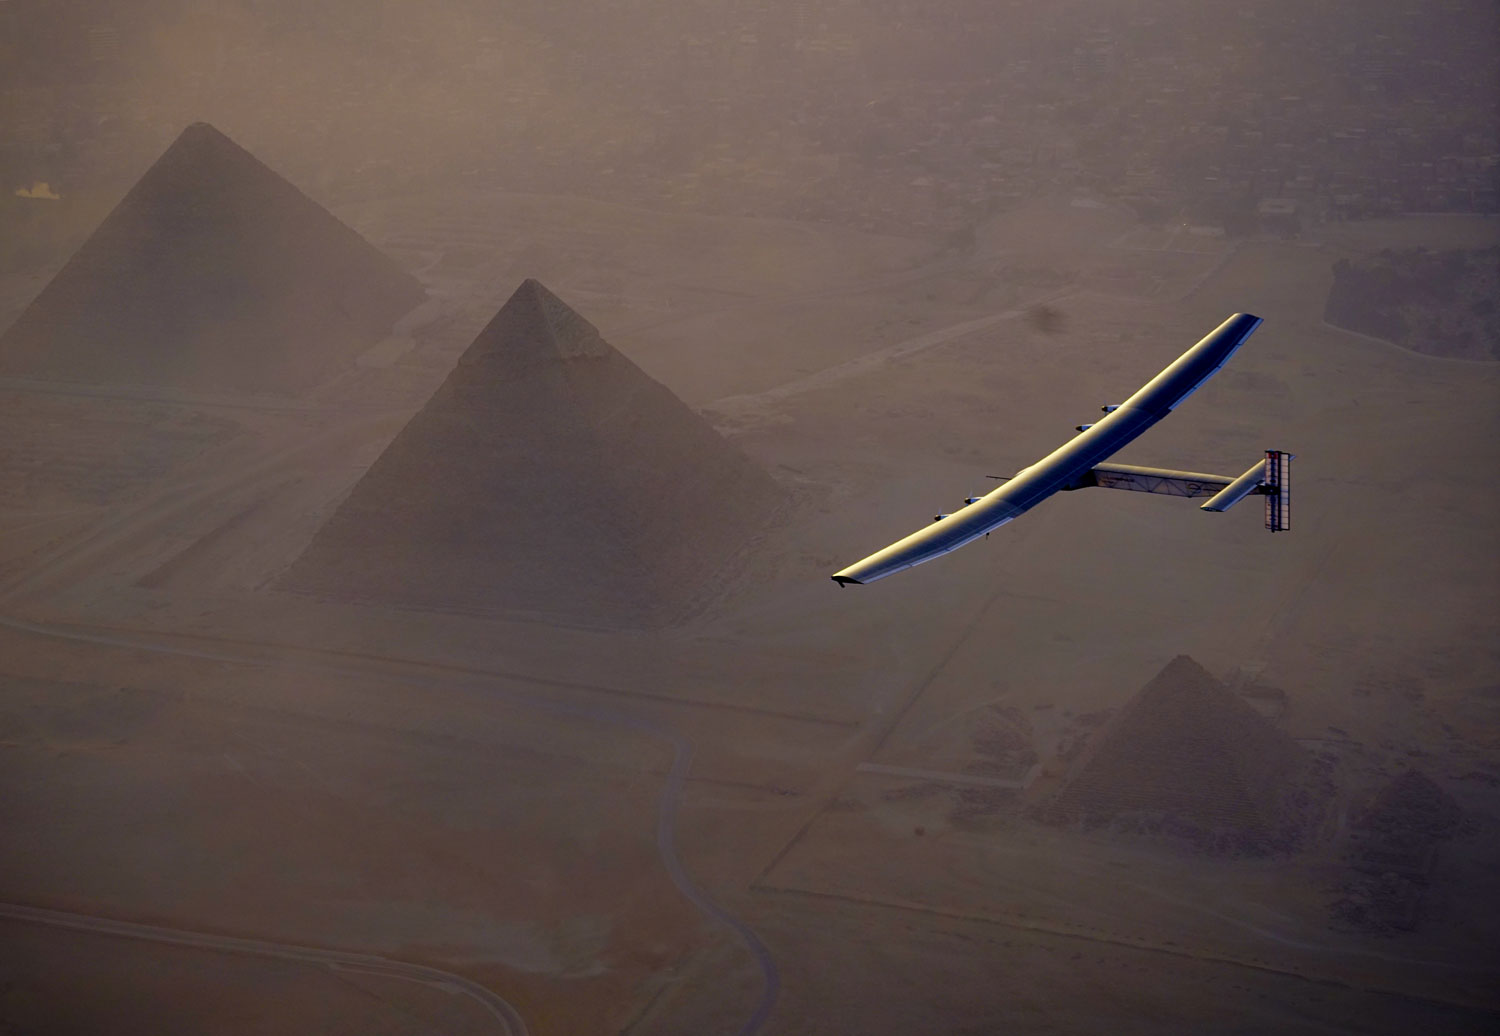 Solar Impulse s’apprête à atterrir au Caire en Égypte et avant survole les pyramides © Solar Impulse